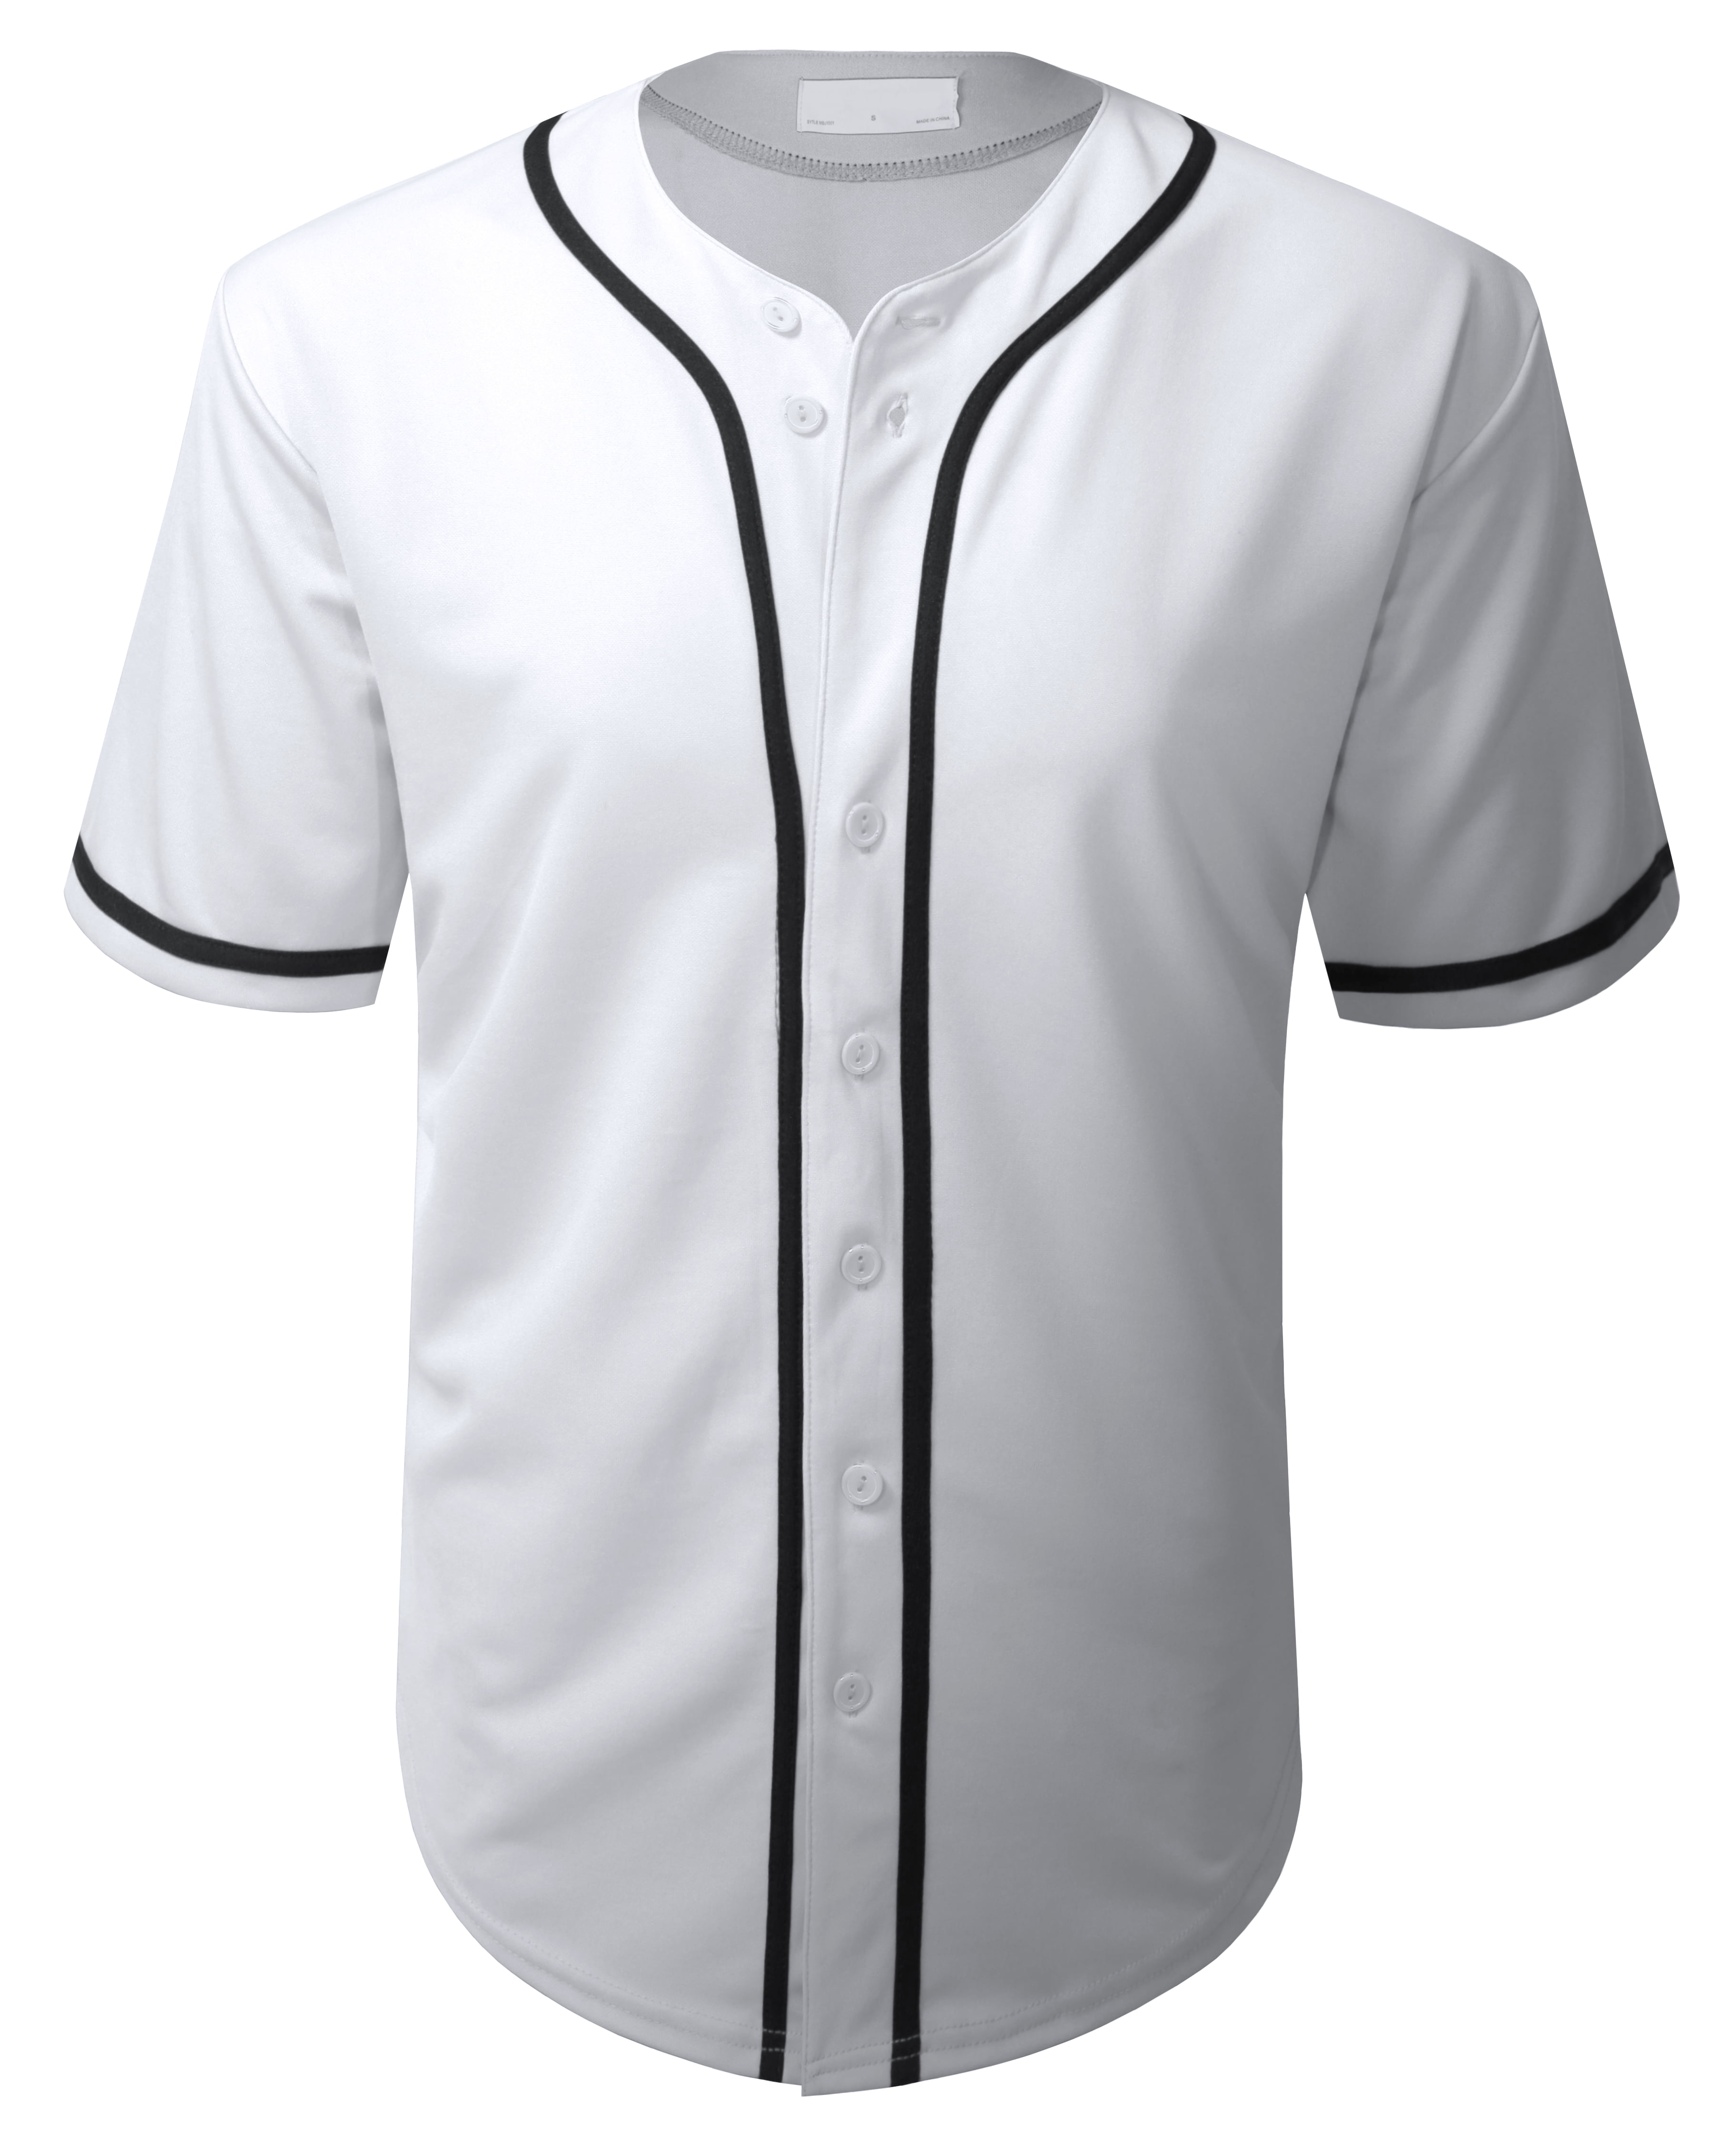 Allsense Men's Basic Sport Outline Baseball Jersey Classic Short Sleeve  Shirt White 3XL